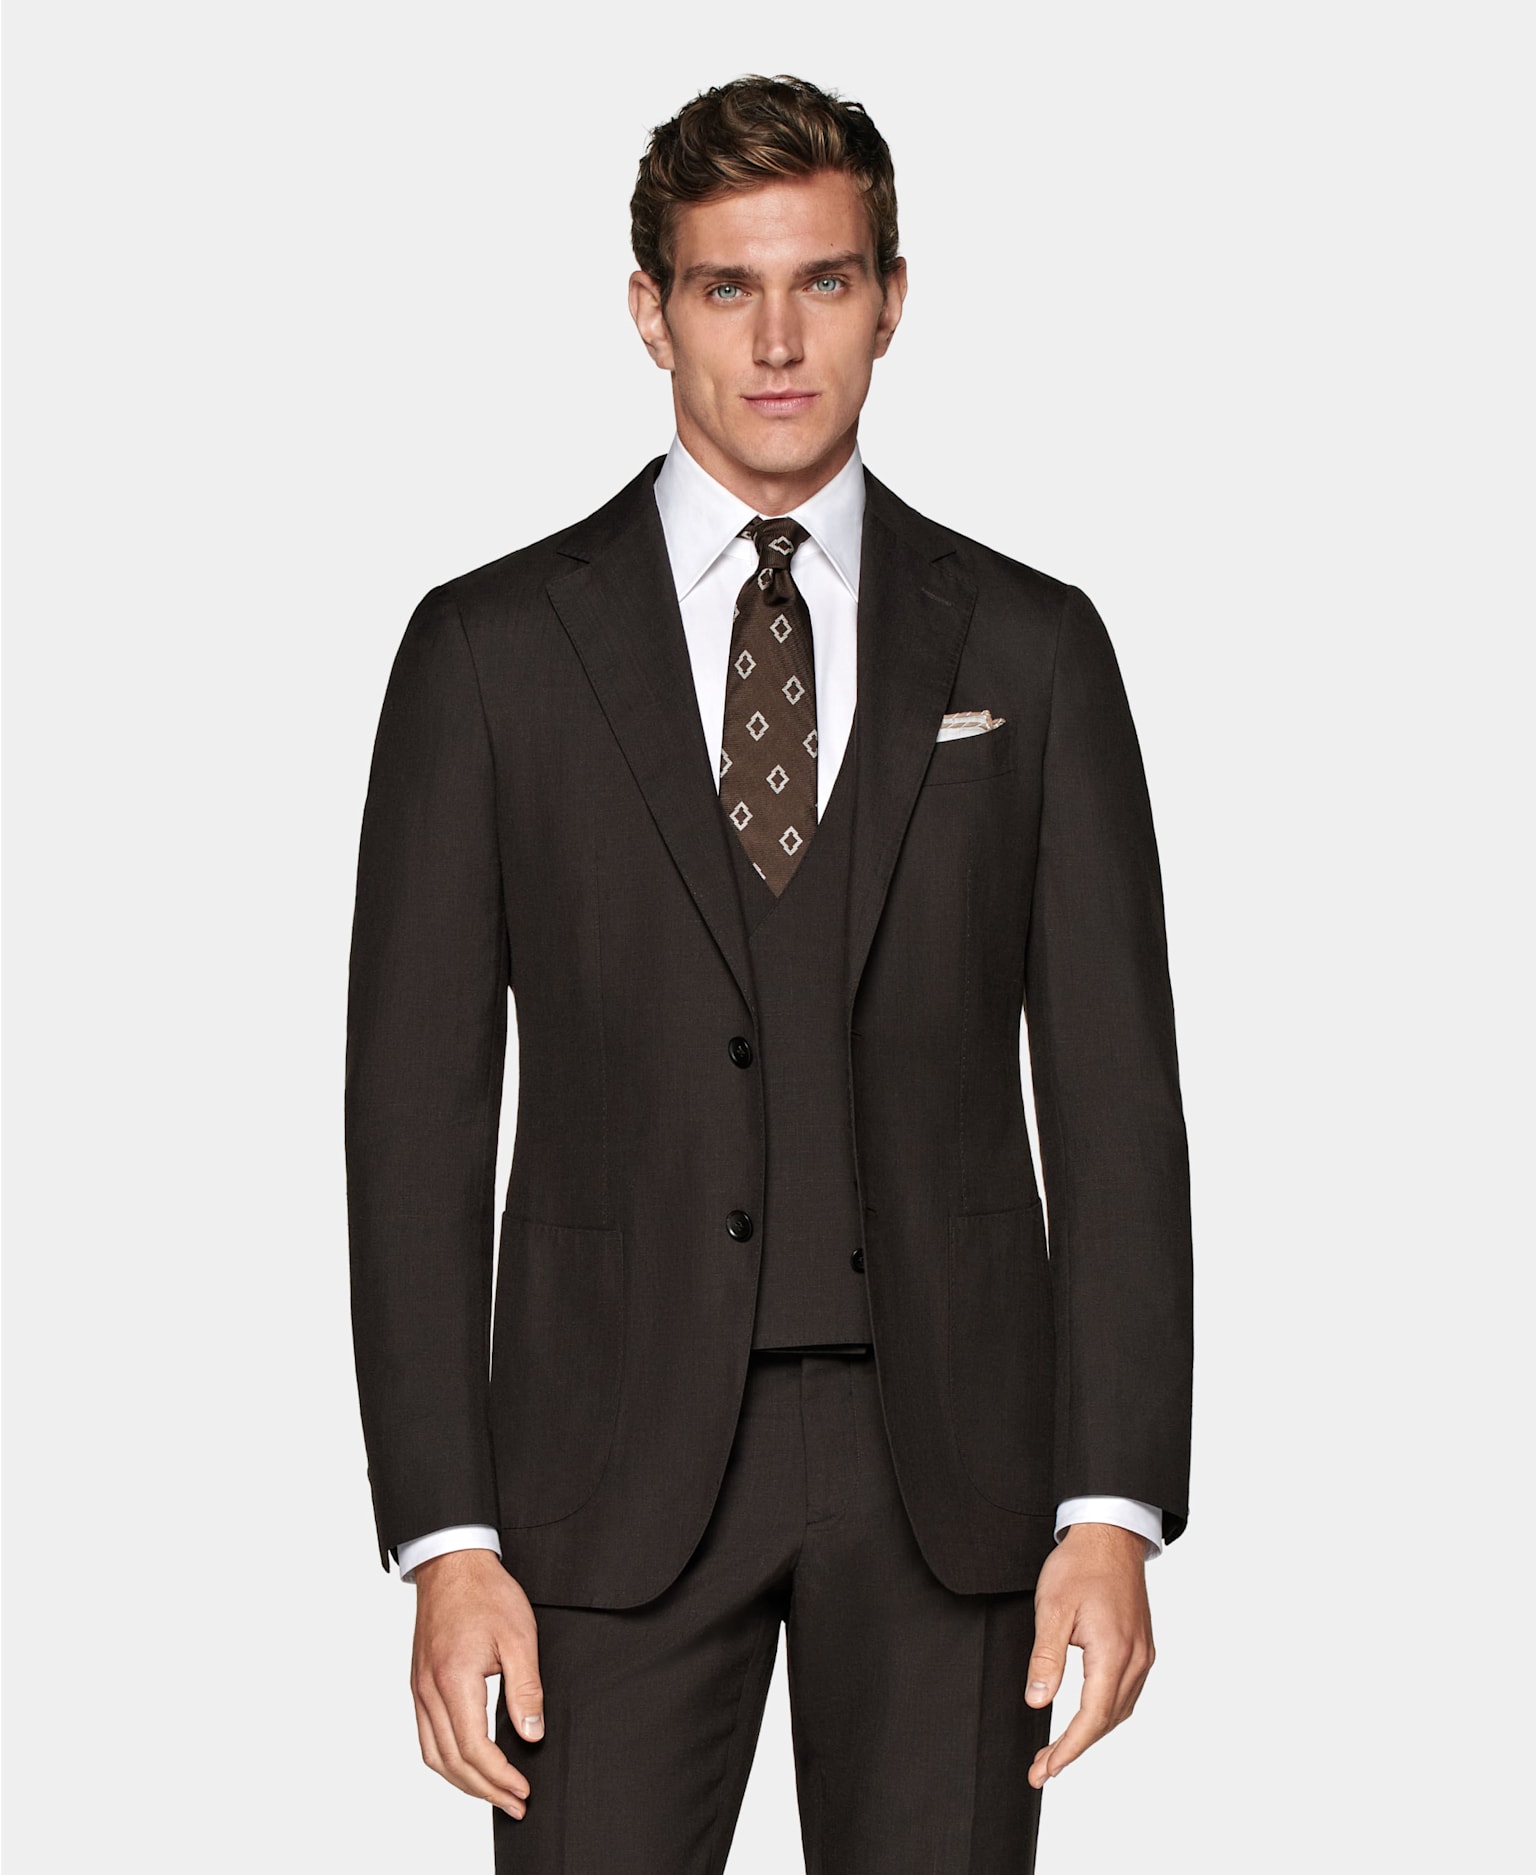 abito marrone scuro in tre pezzi con camicia bianca, cravatta marrone con motivo e pochette.